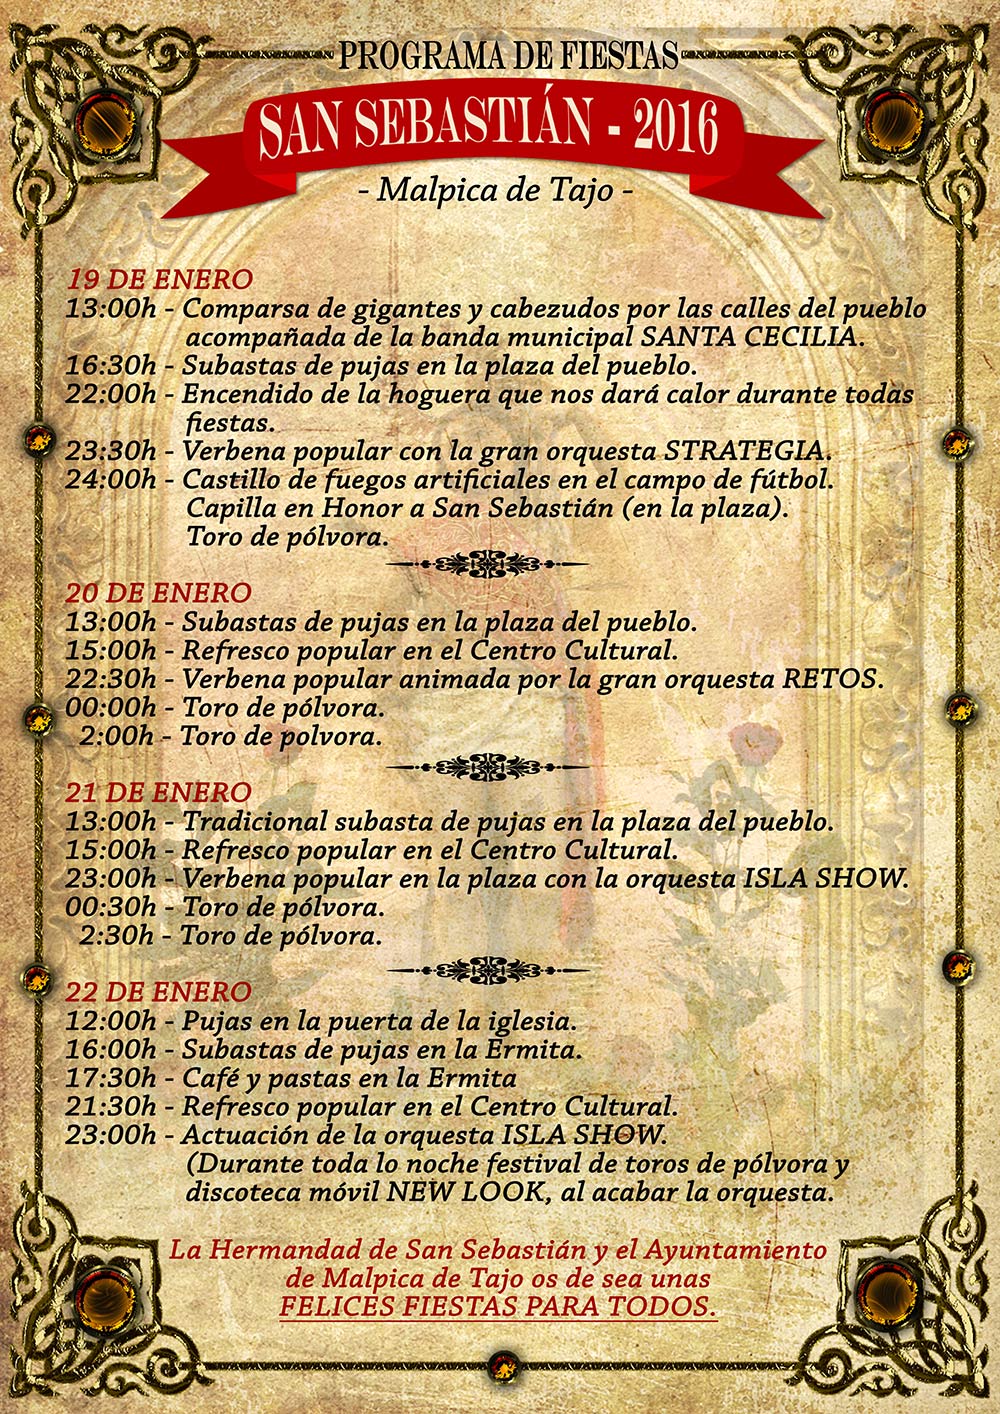 Programa de la fiesta de San Sebastián 2016 en Malpica de Tajo